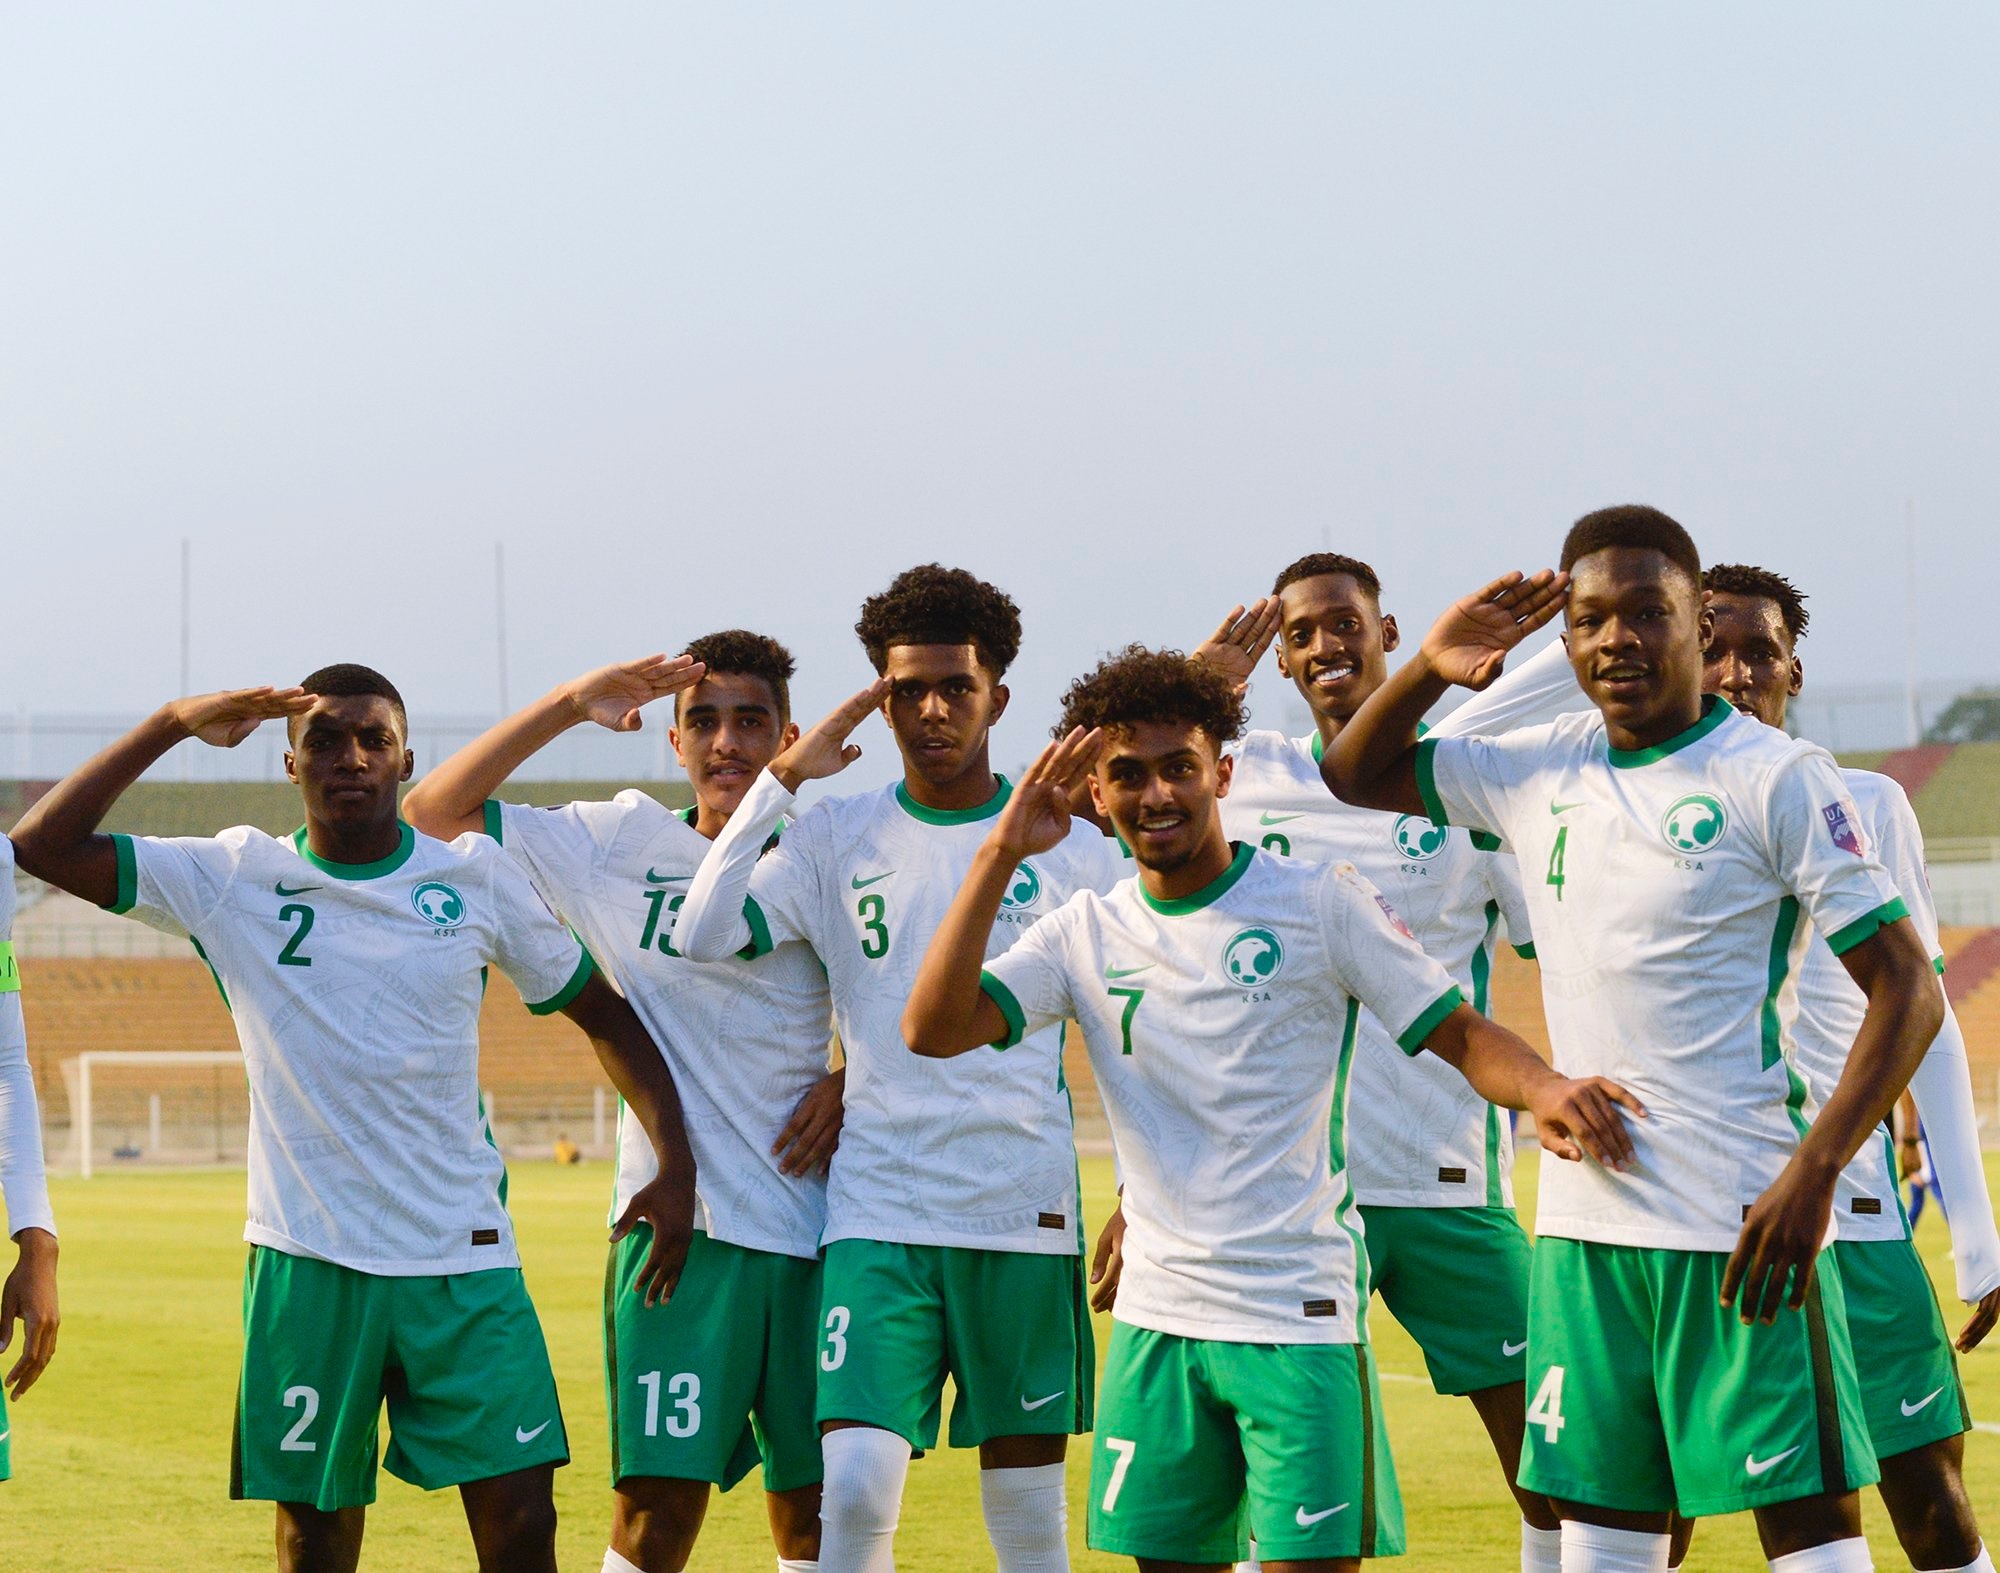 المنتخب السعودي للشباب